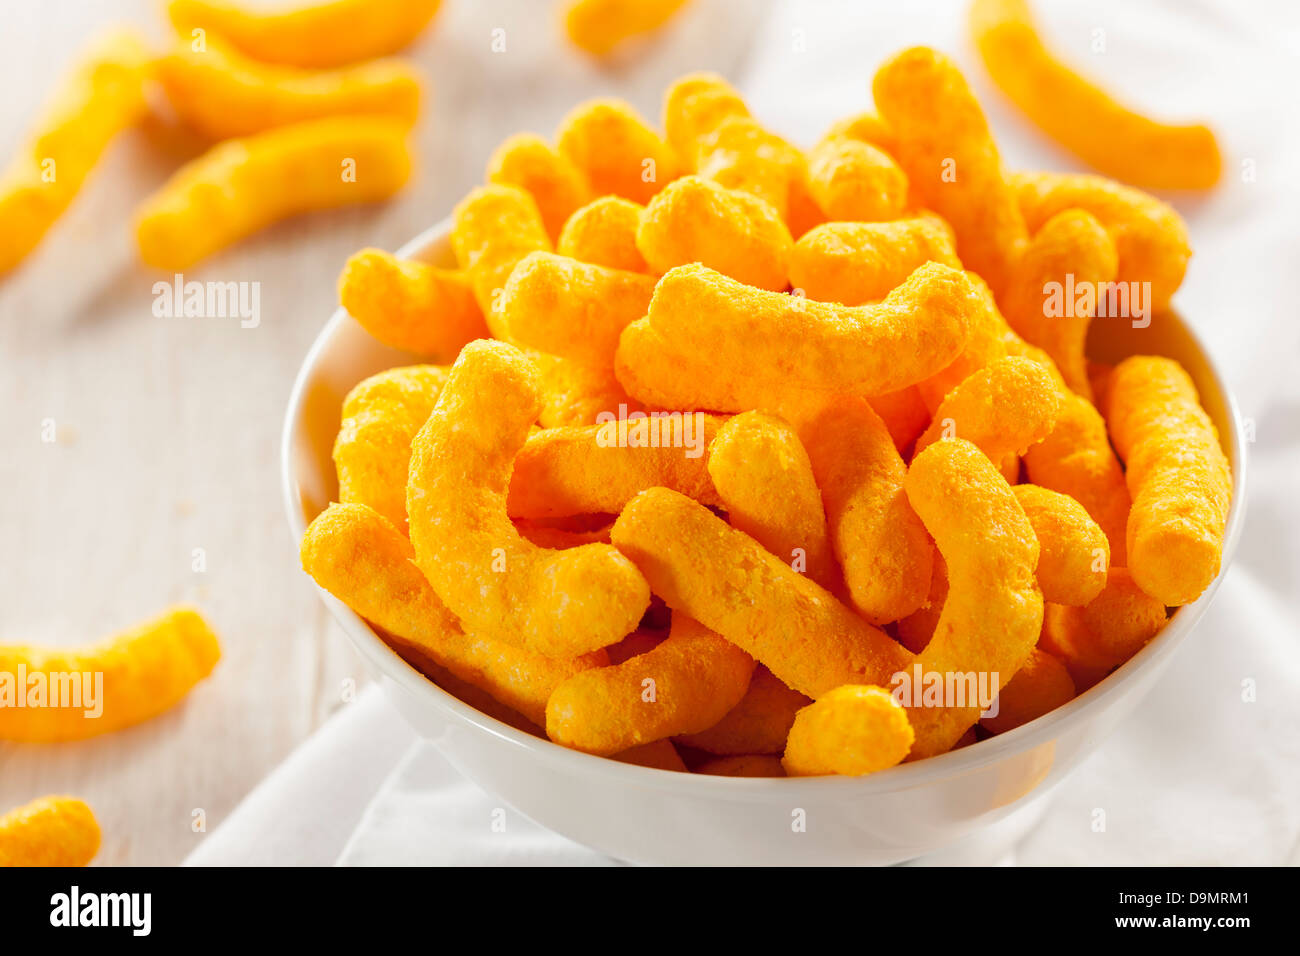 Chips Fromage Puffy Orange malsaine contre un arrière-plan Banque D'Images